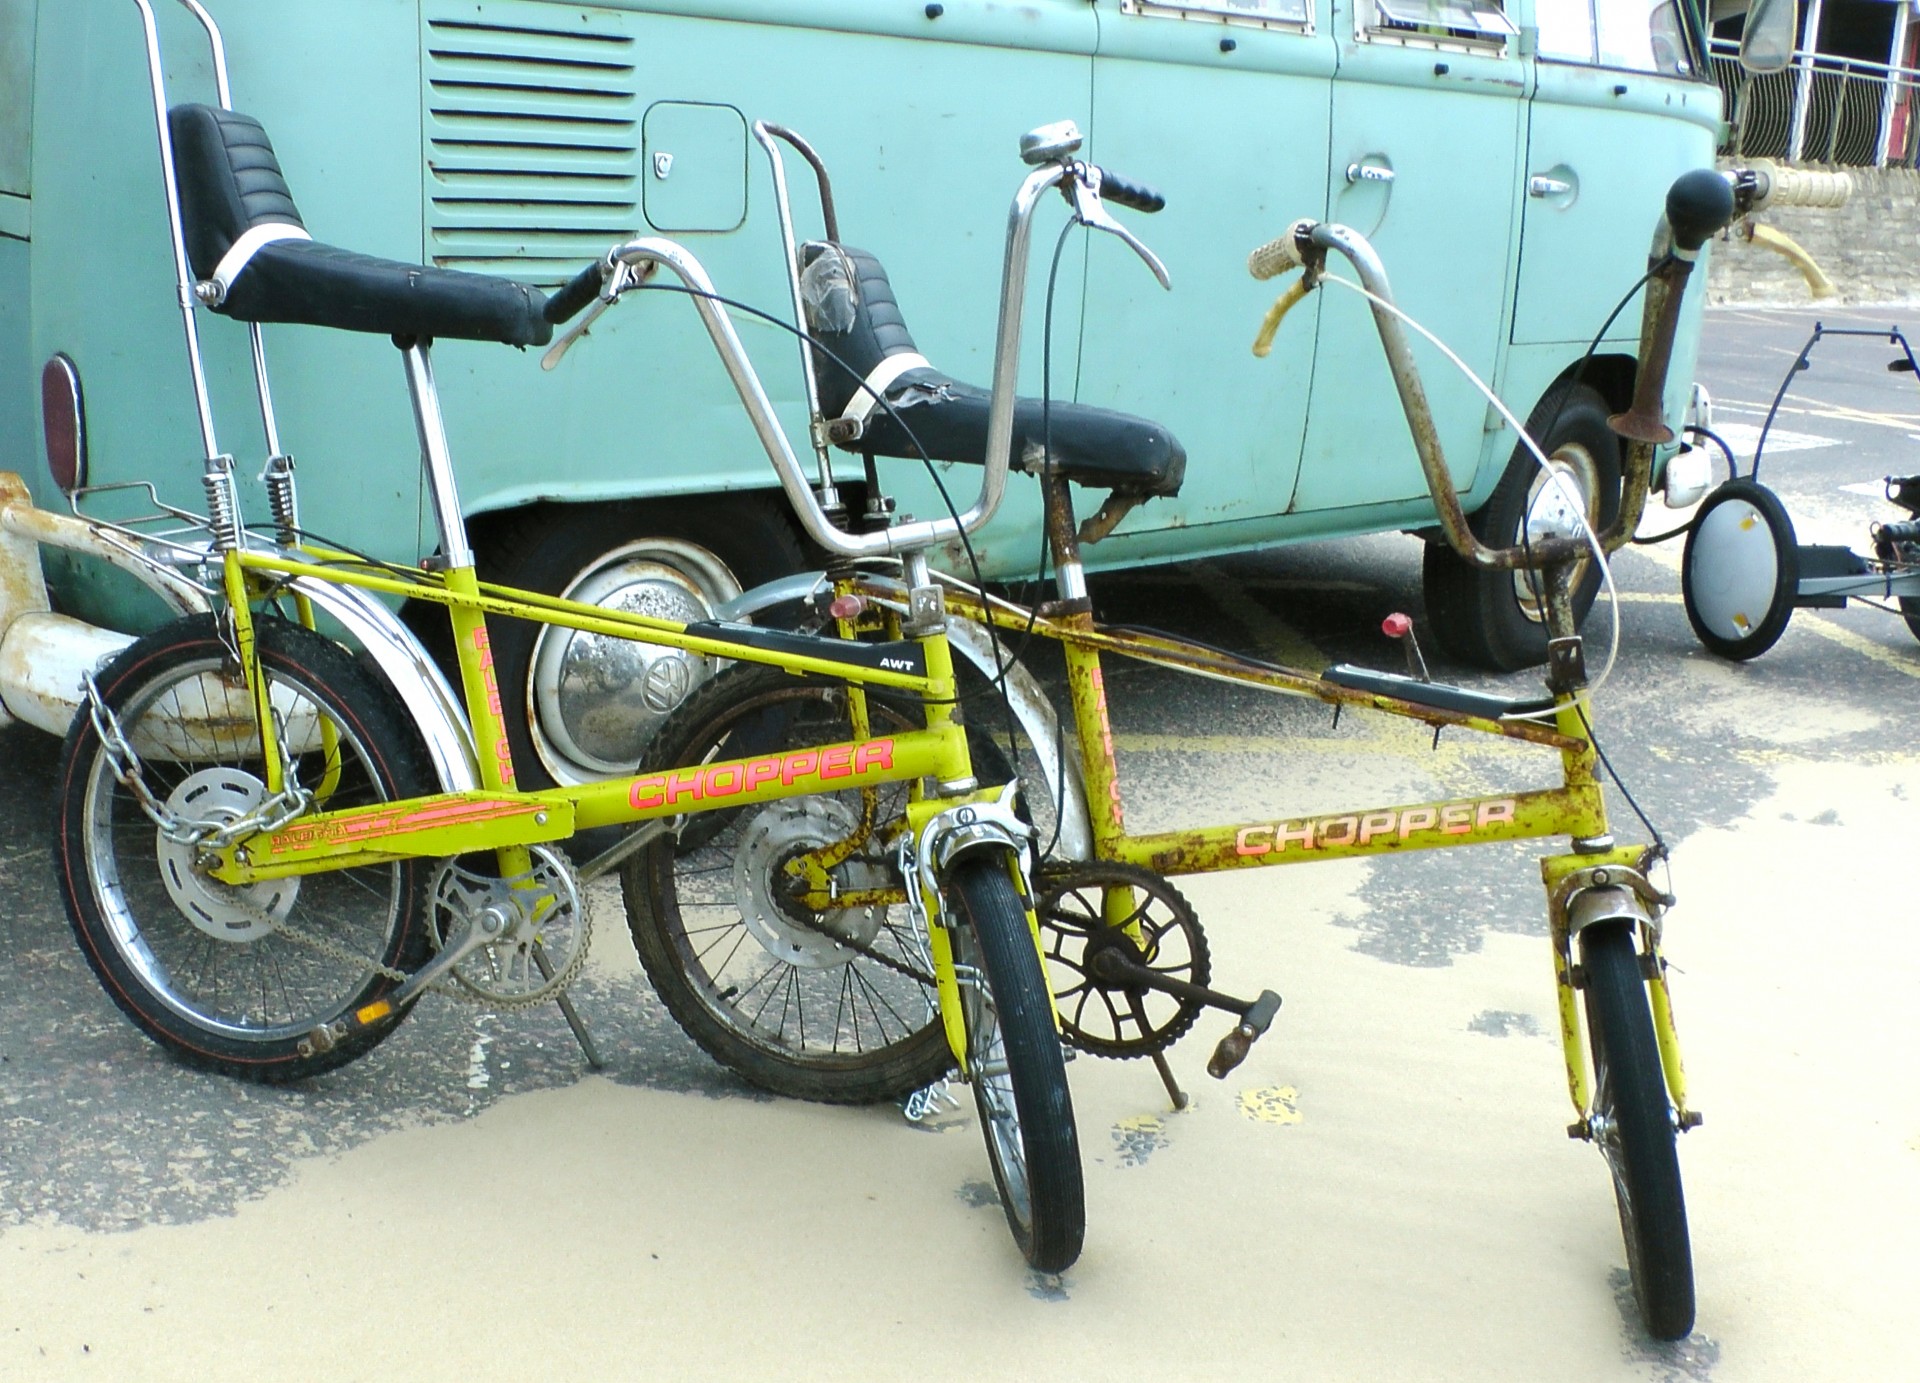 Bicicletas Chopper. Foto de Alex Borland, PublicDomainPictures.